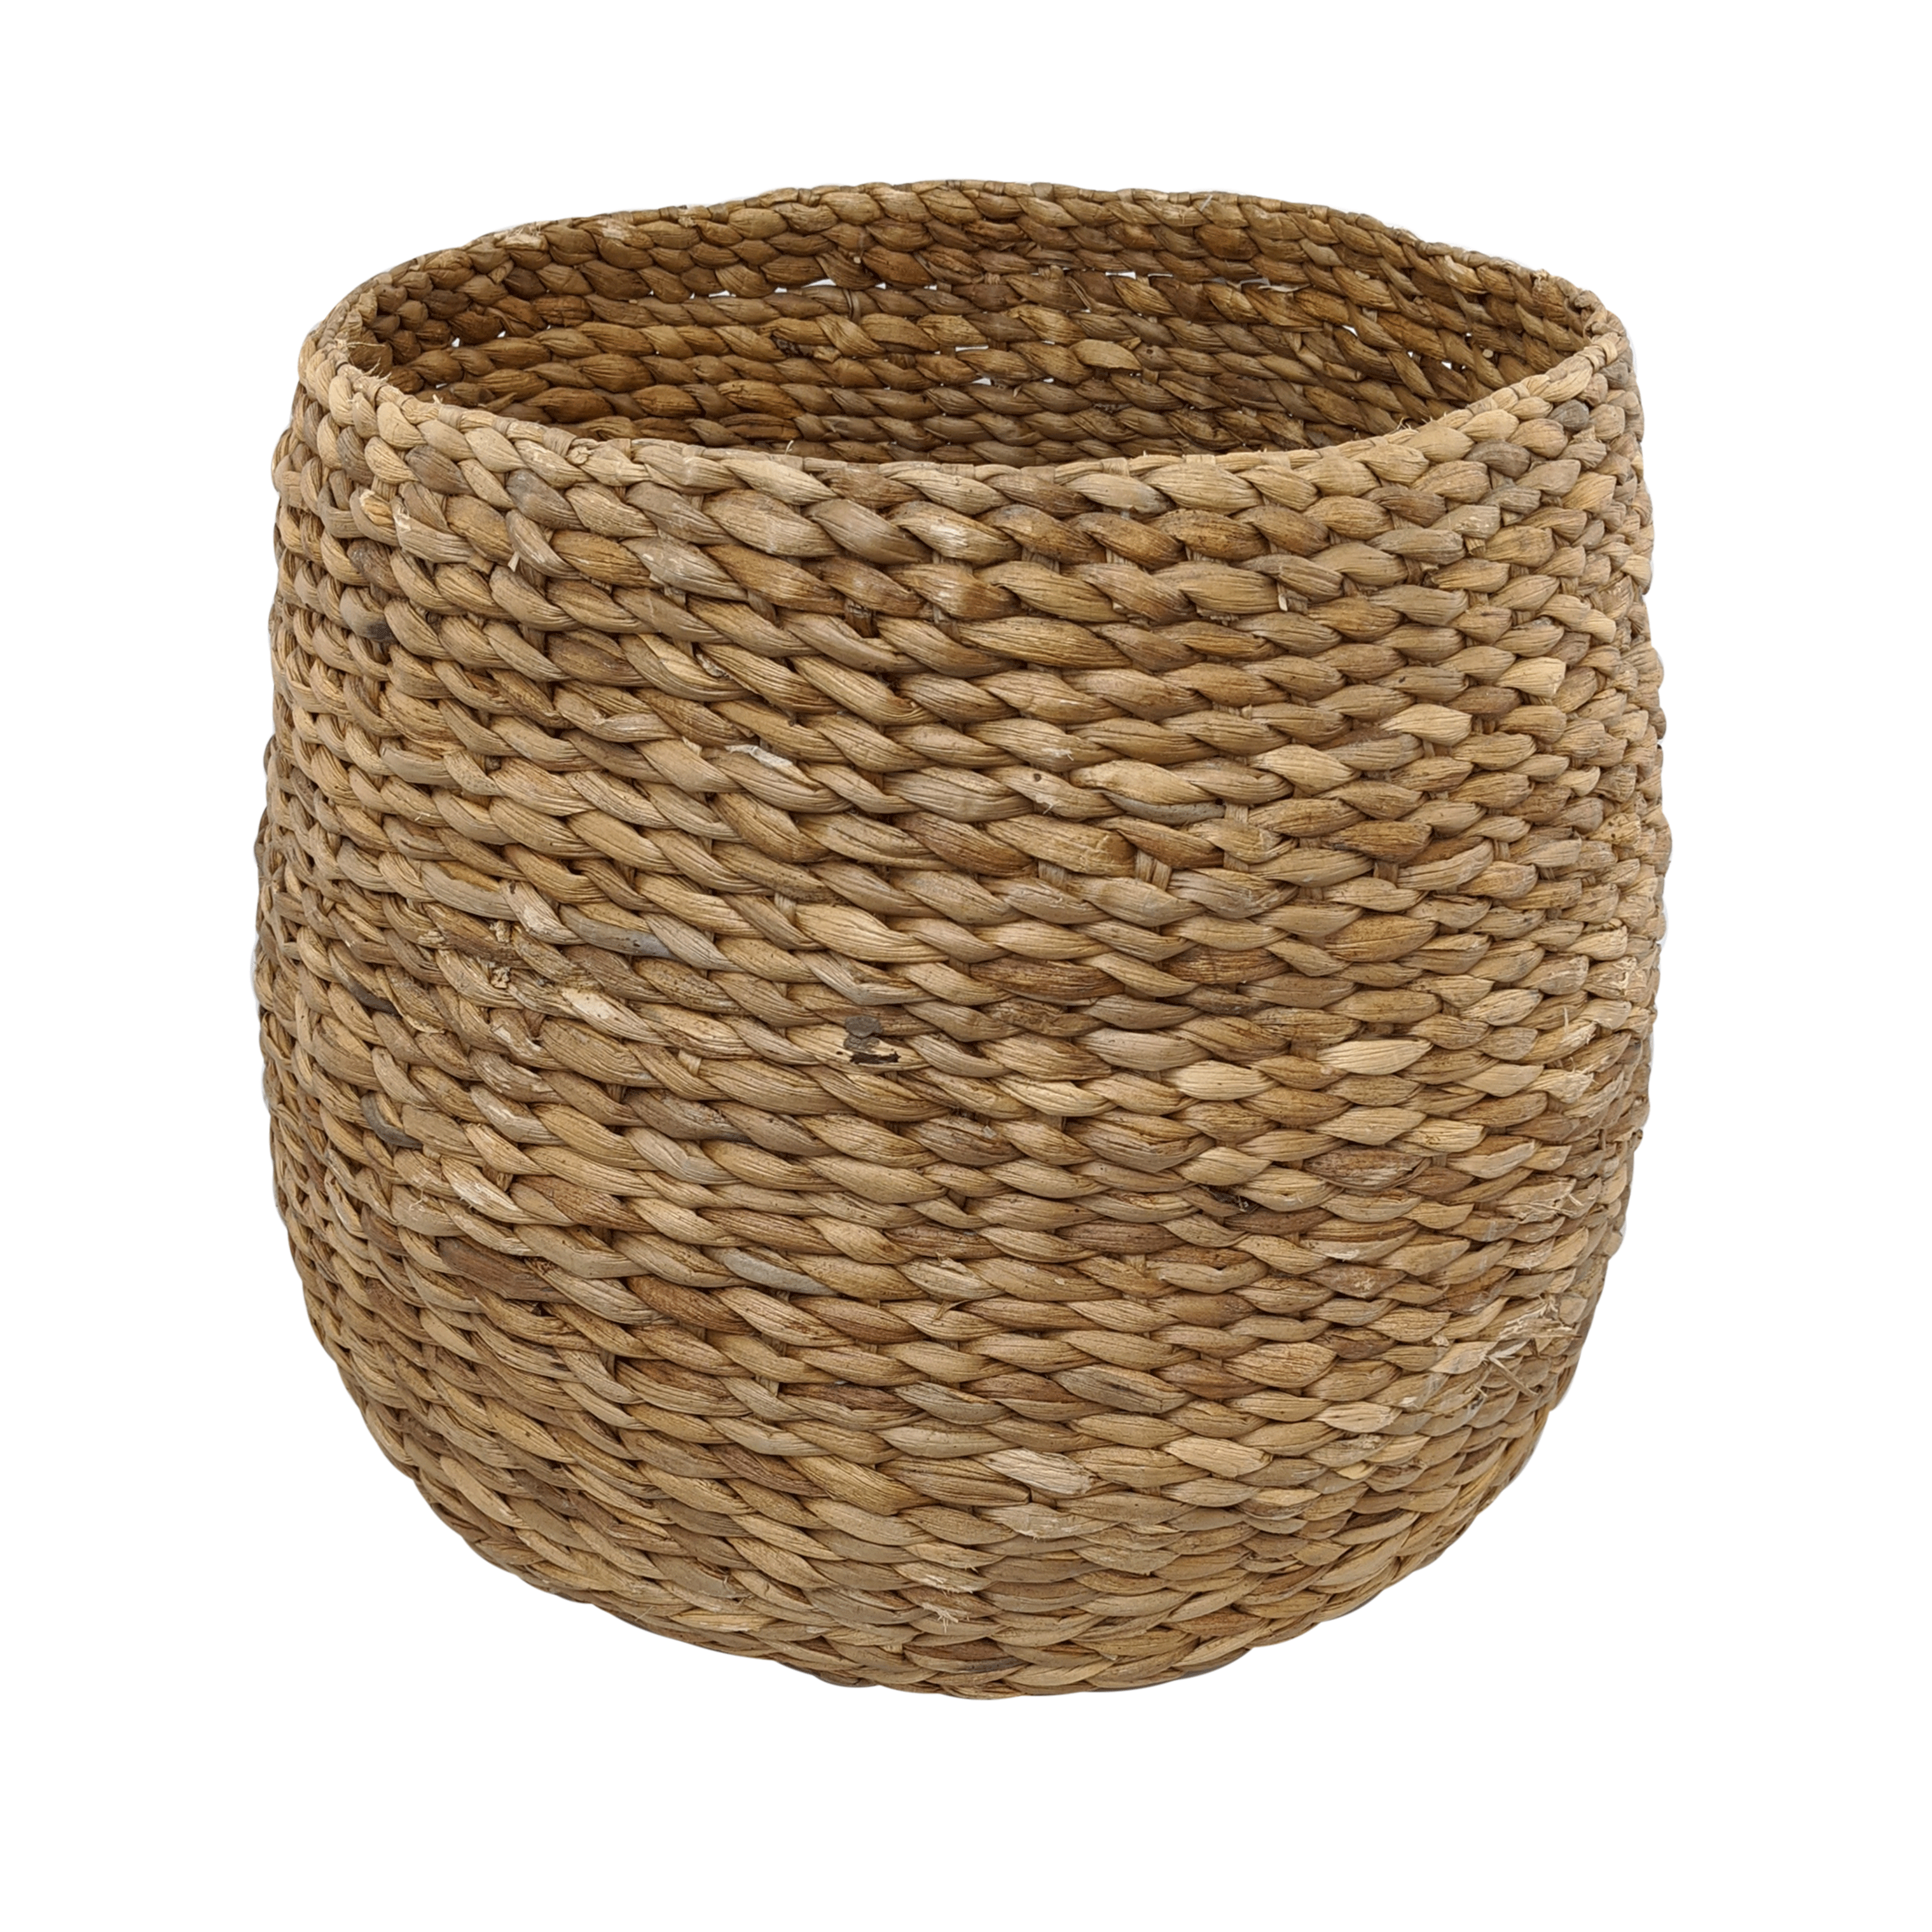 Water Hyacinth Basket - Extra Large